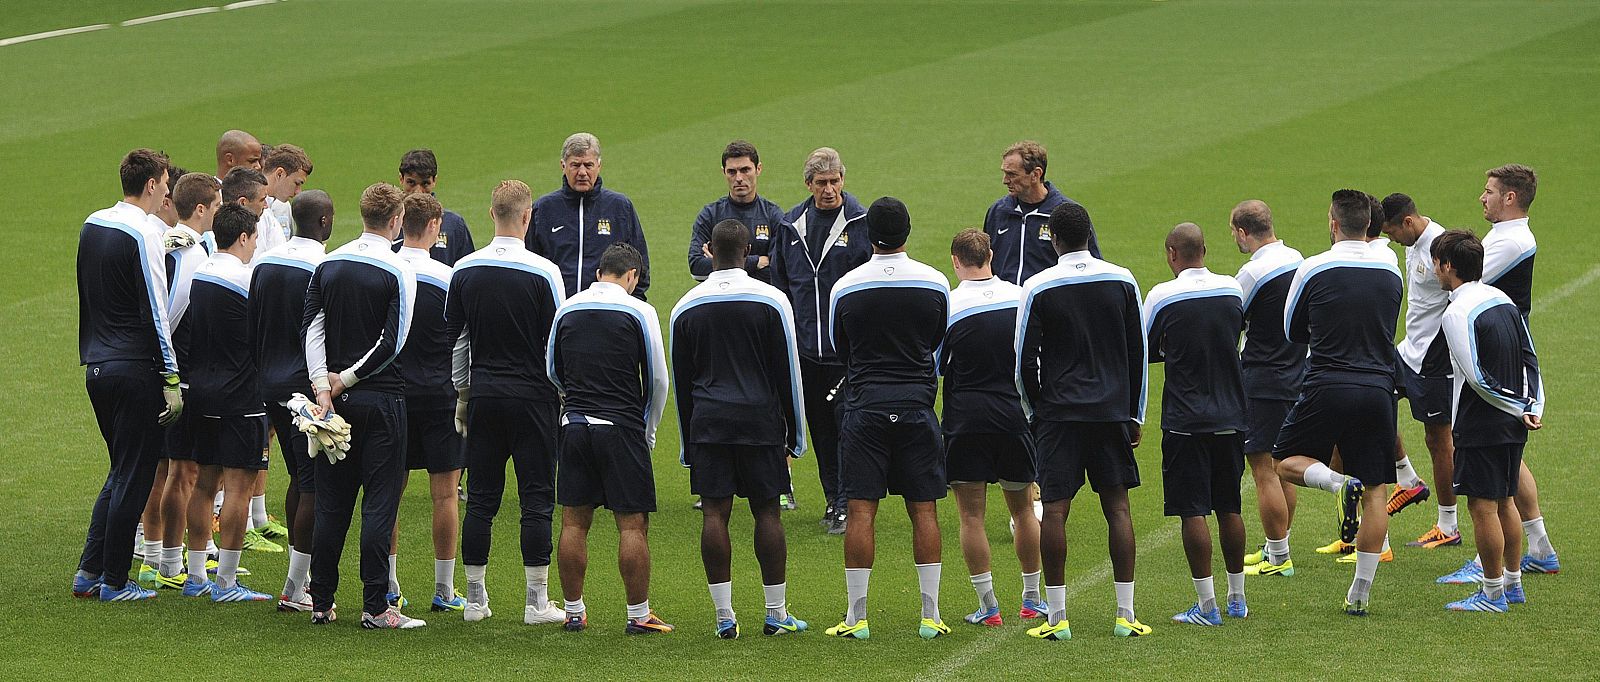 Los jugadores del del Manchester City escuchan las órdenes de su entrenador, Manuel Pellegrini